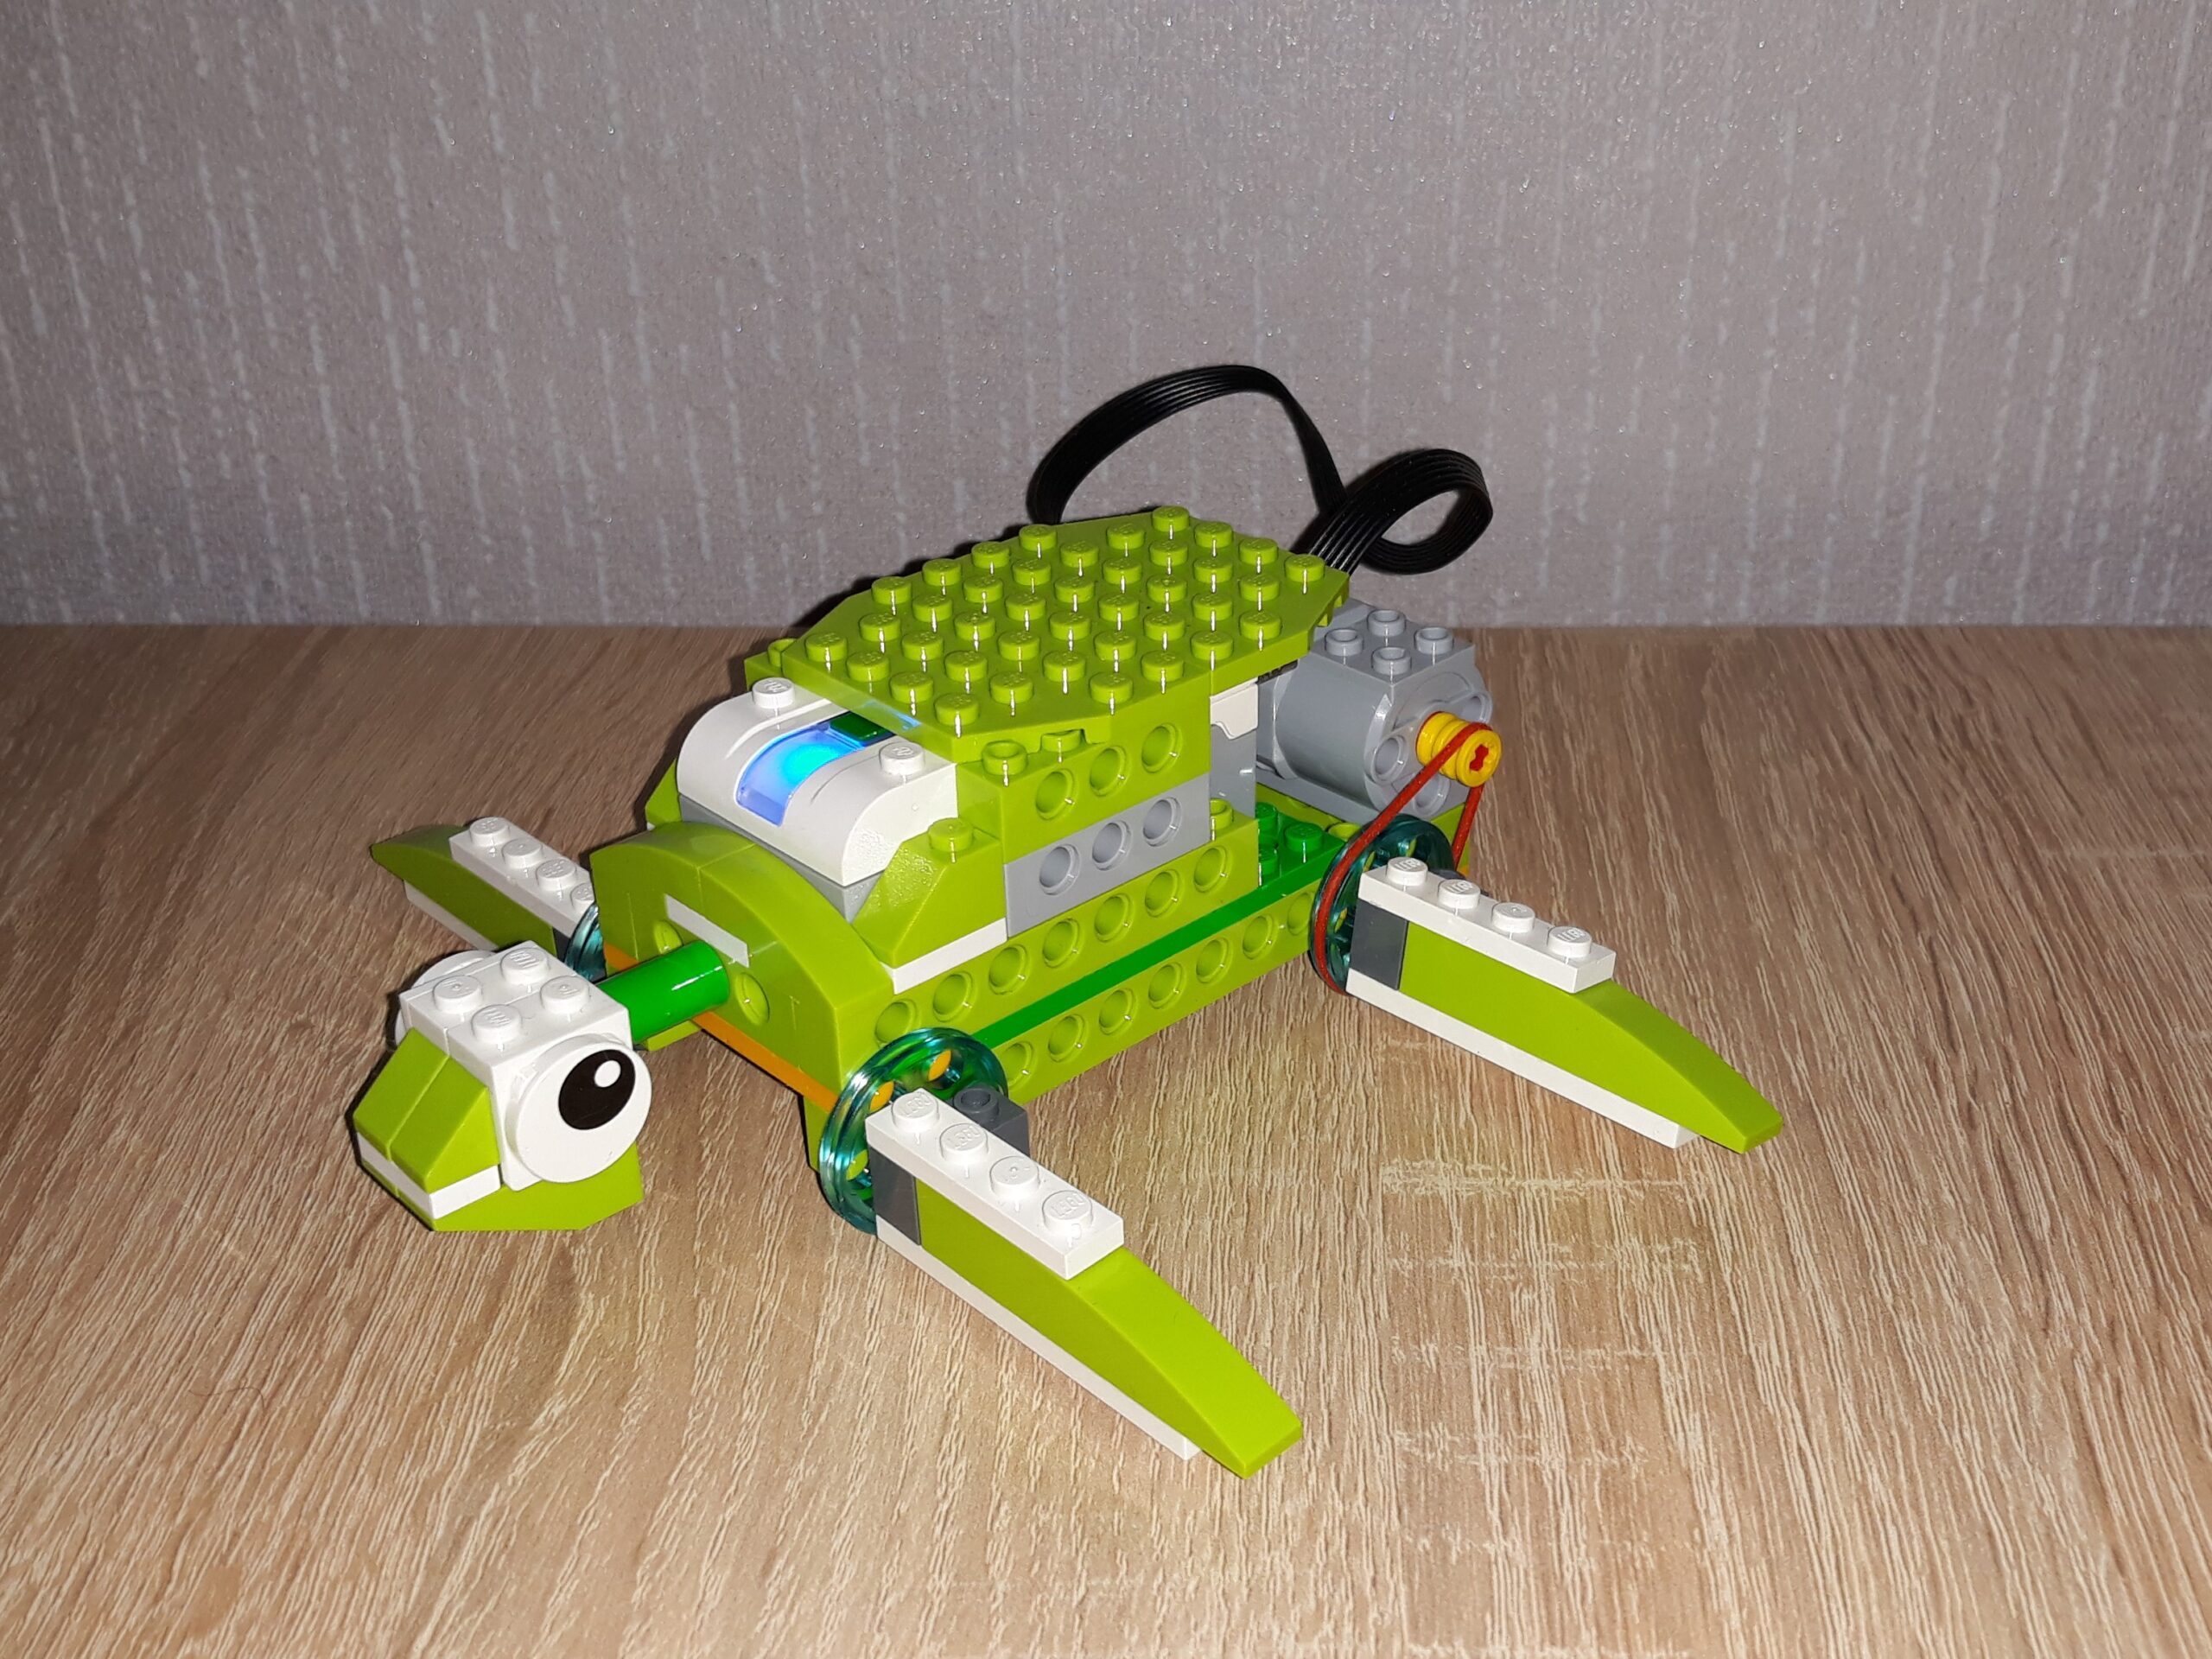 Пошаговая инструкция по сборке из набора LEGO Education WeDo 2.0 Черепашка